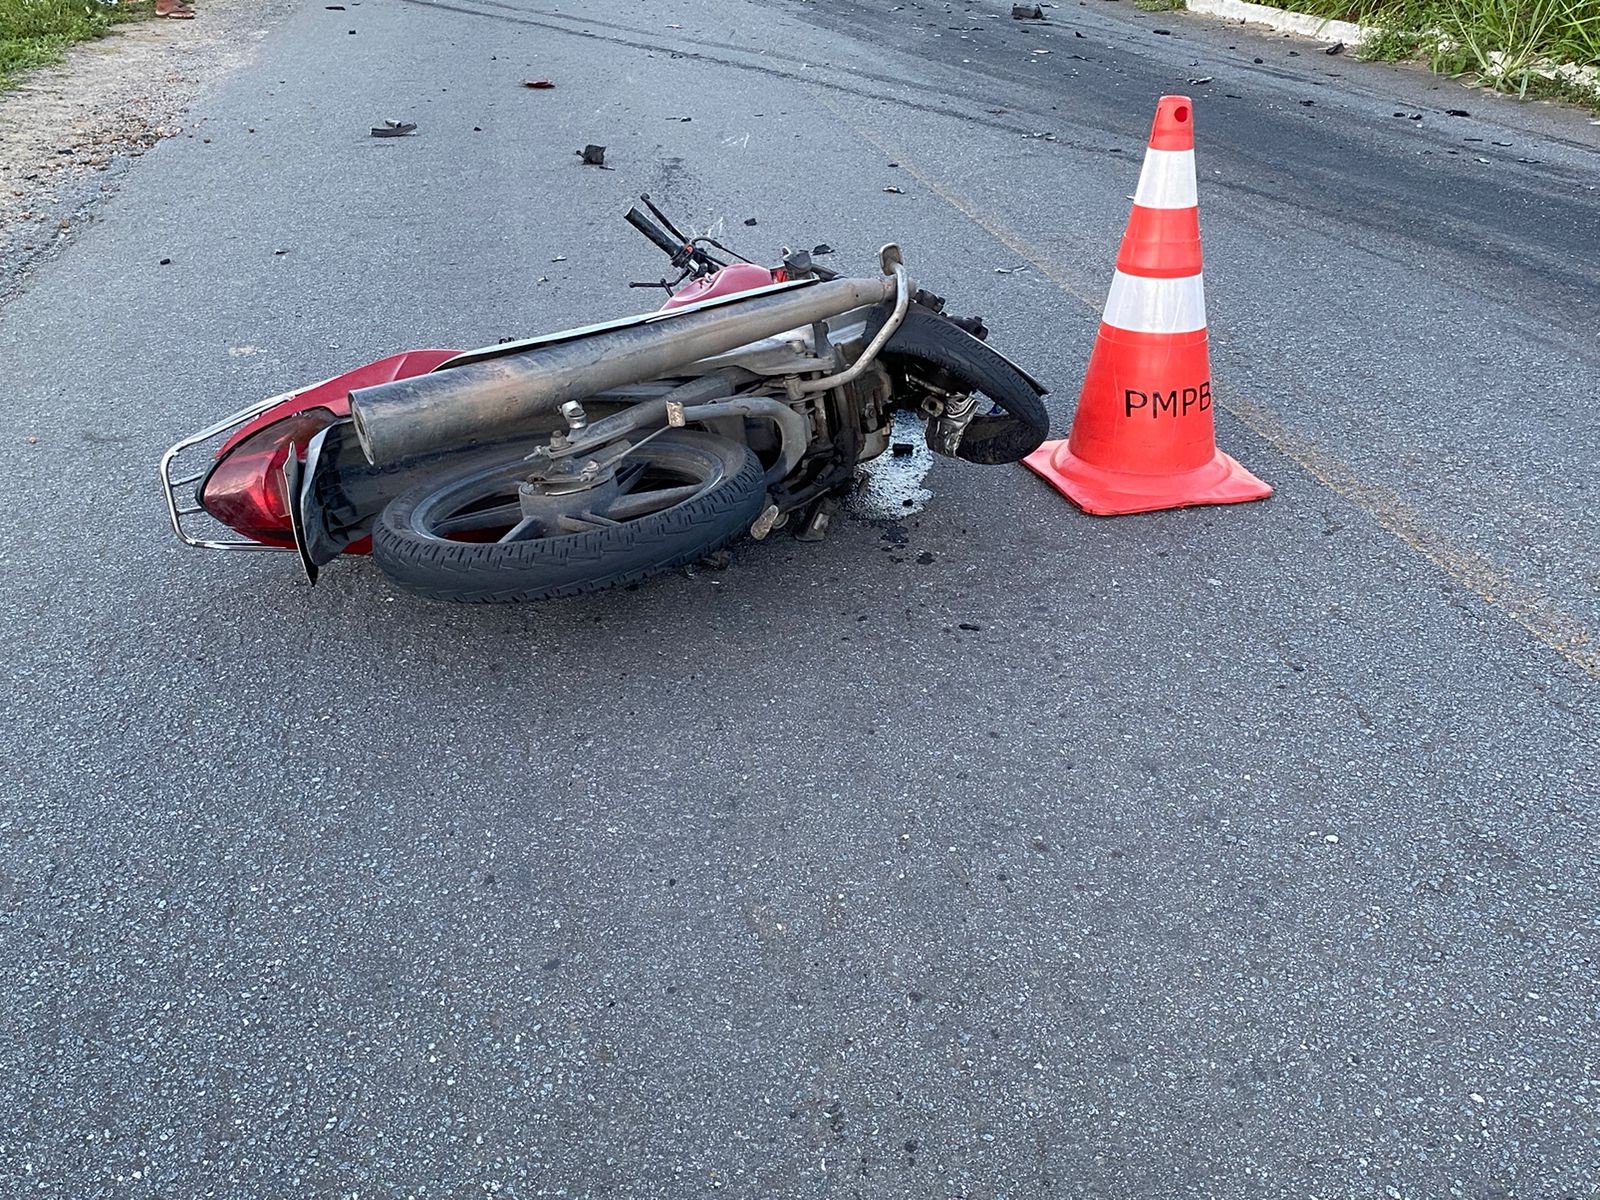 Motociclista morre após colisão com carro em Massaranduba, na PB